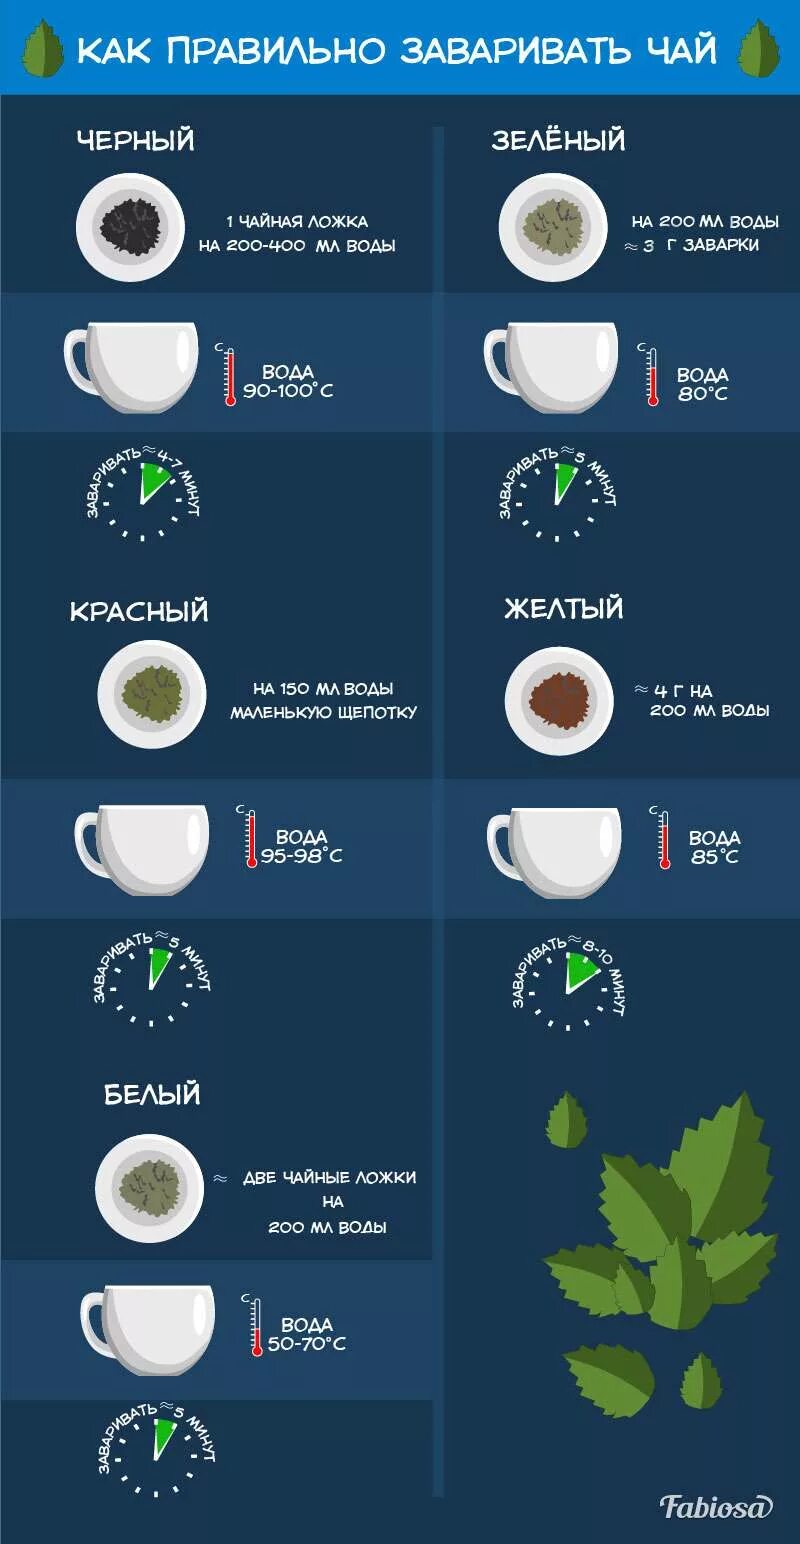 Сколько можно заваривать зеленый чай. Как правильно заваривать чай. Как завариватььзеленый чай. Как правильно заваривать зеленый чай. Правильная заварка чая.